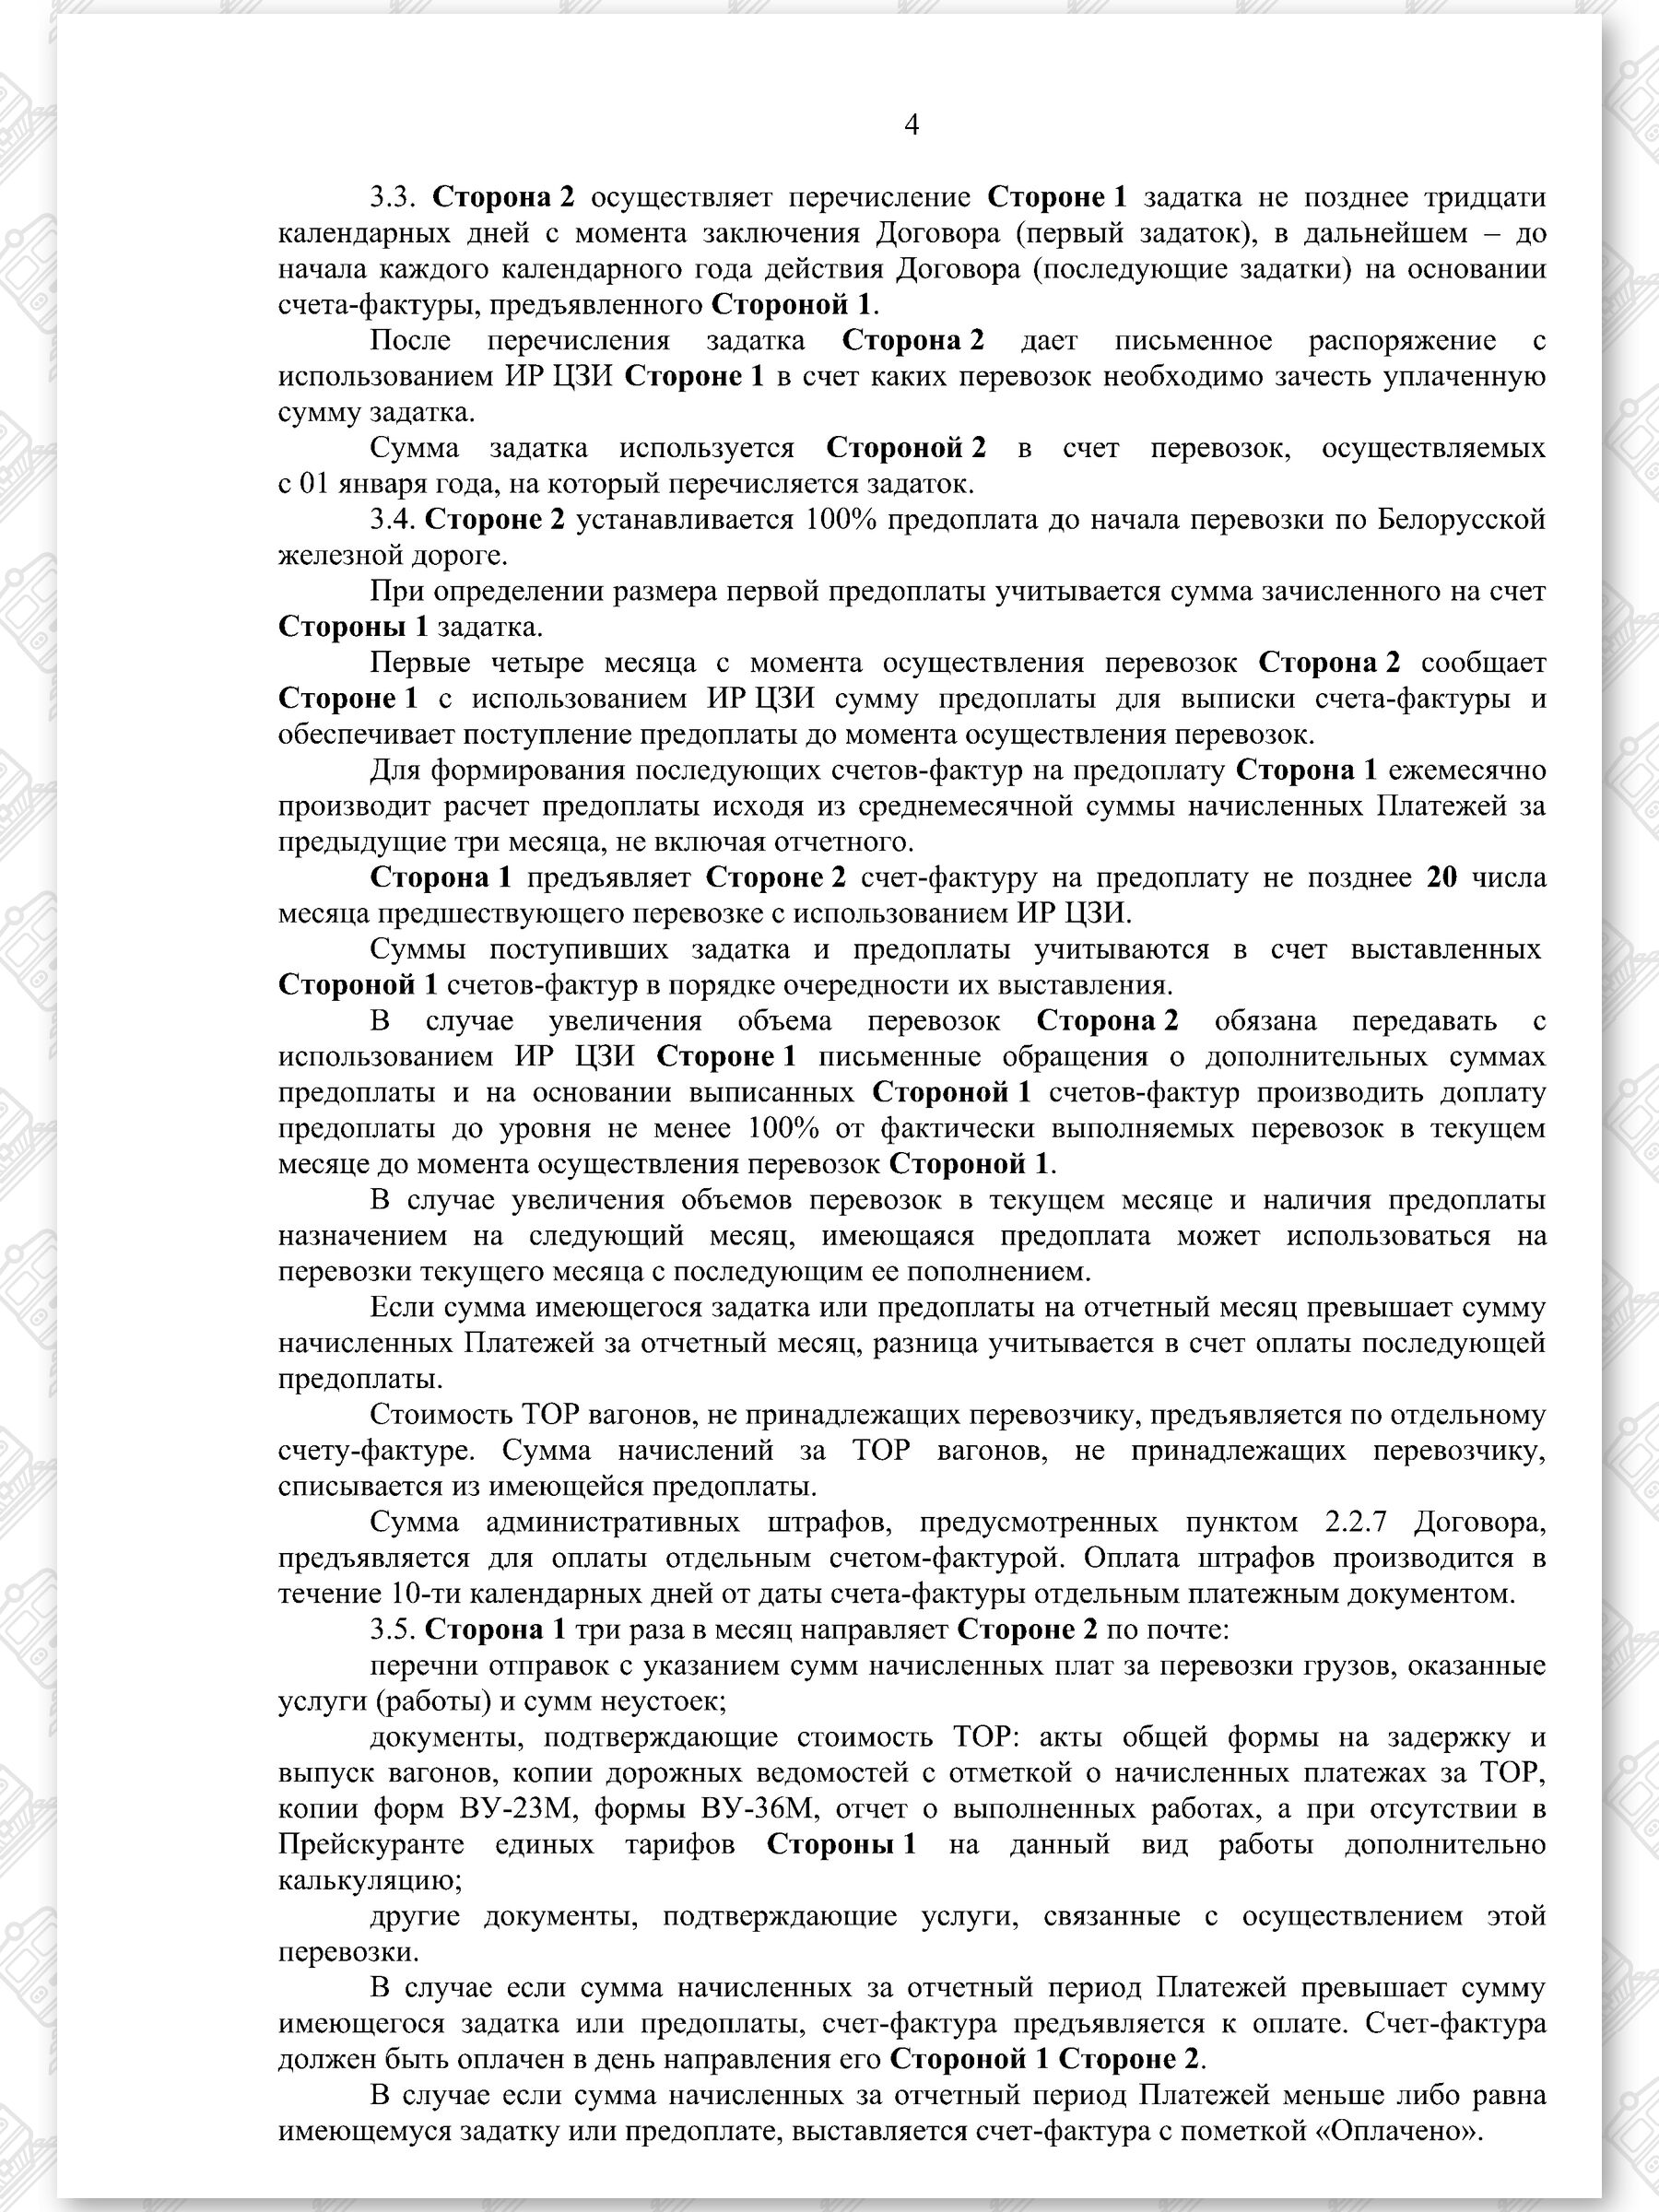 Договор на 2022 - 2024 гг. БЖД с ООО «ТранскоЭнерджи» (Страница 4)